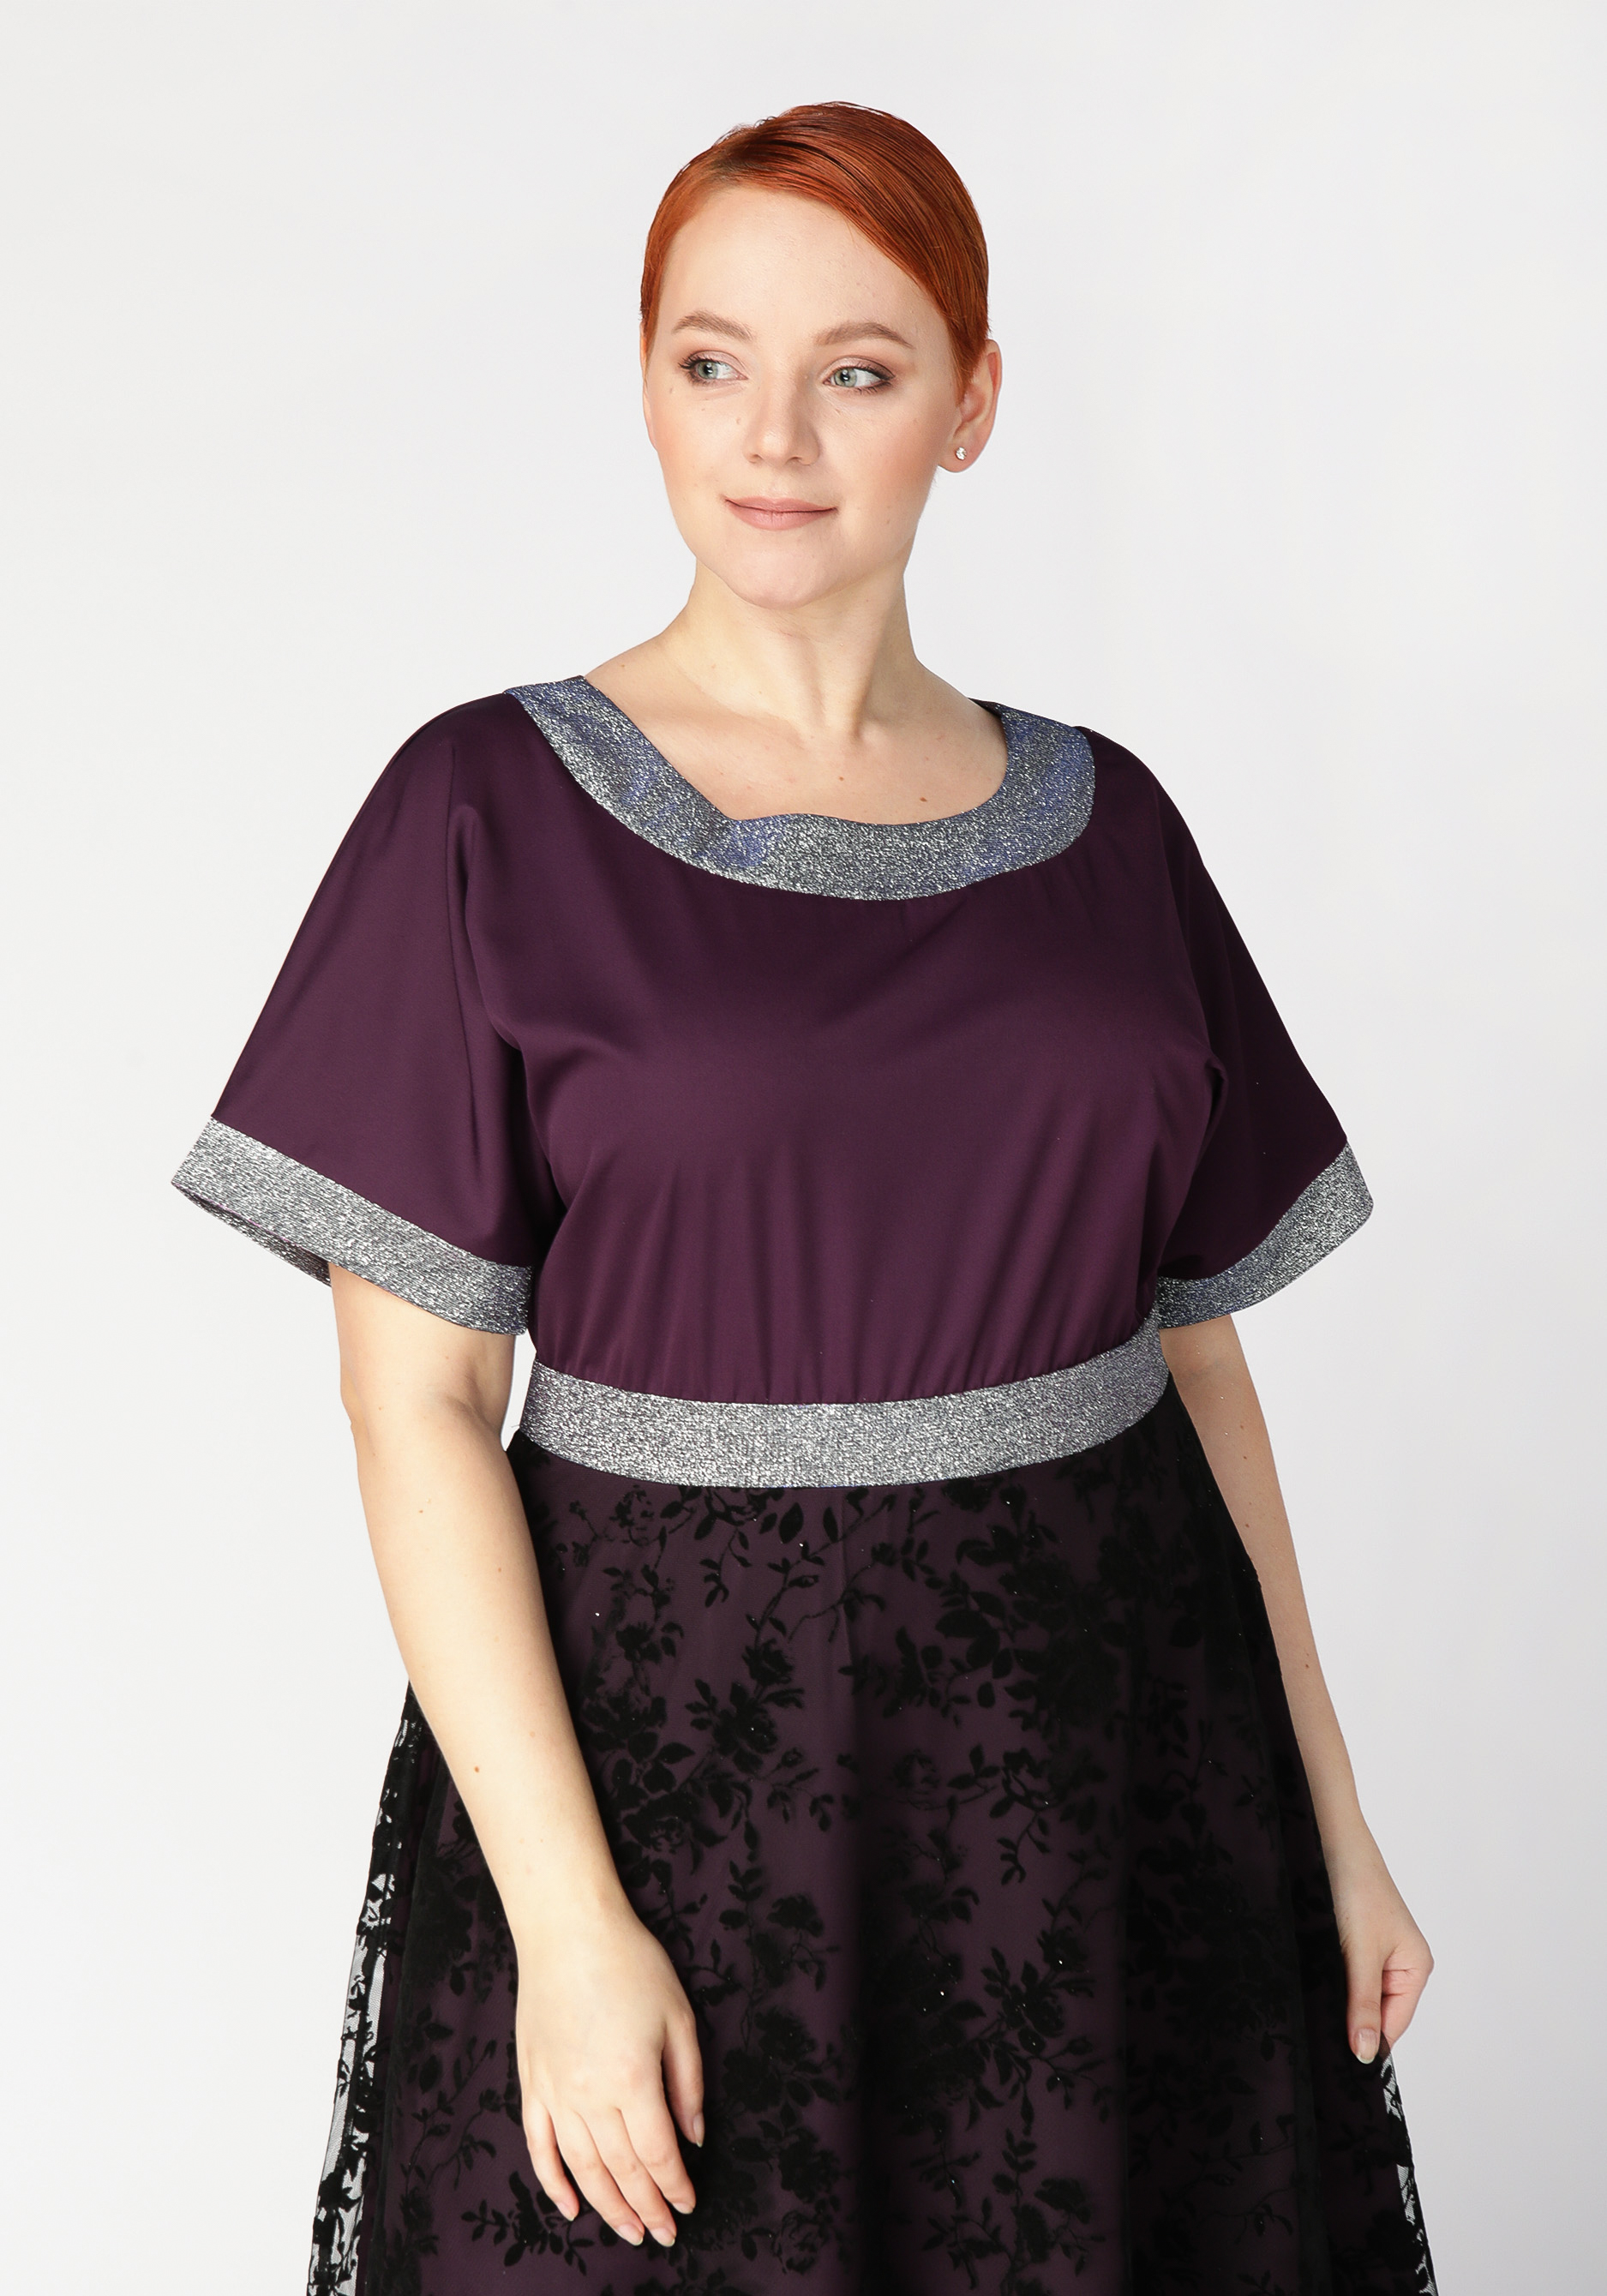 Платье с объемным принтом Mio Imperatrice, цвет баклажановый, размер 54 - фото 3